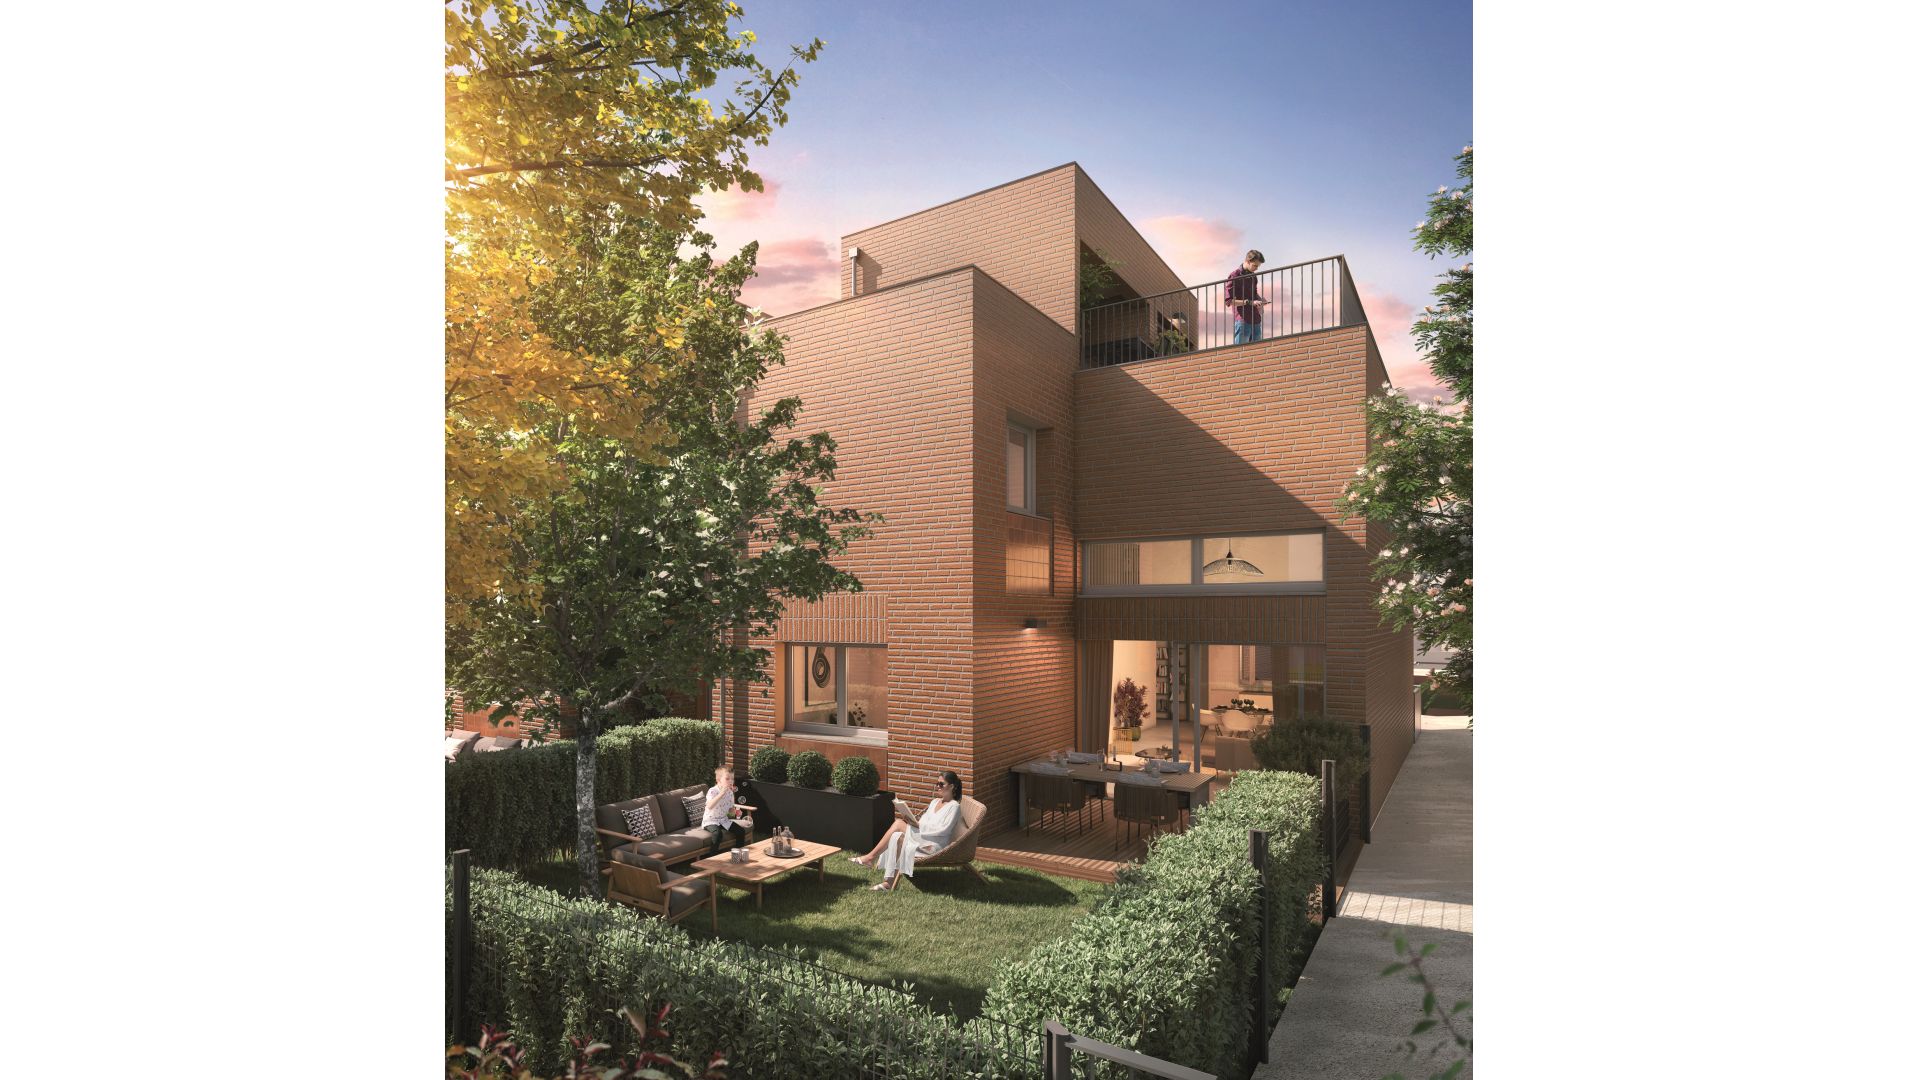 Greencity immobilier - achat appartements neufs du TBis au T4 et villas T5 - Résidence l'Orival - 31400 Toulouse  